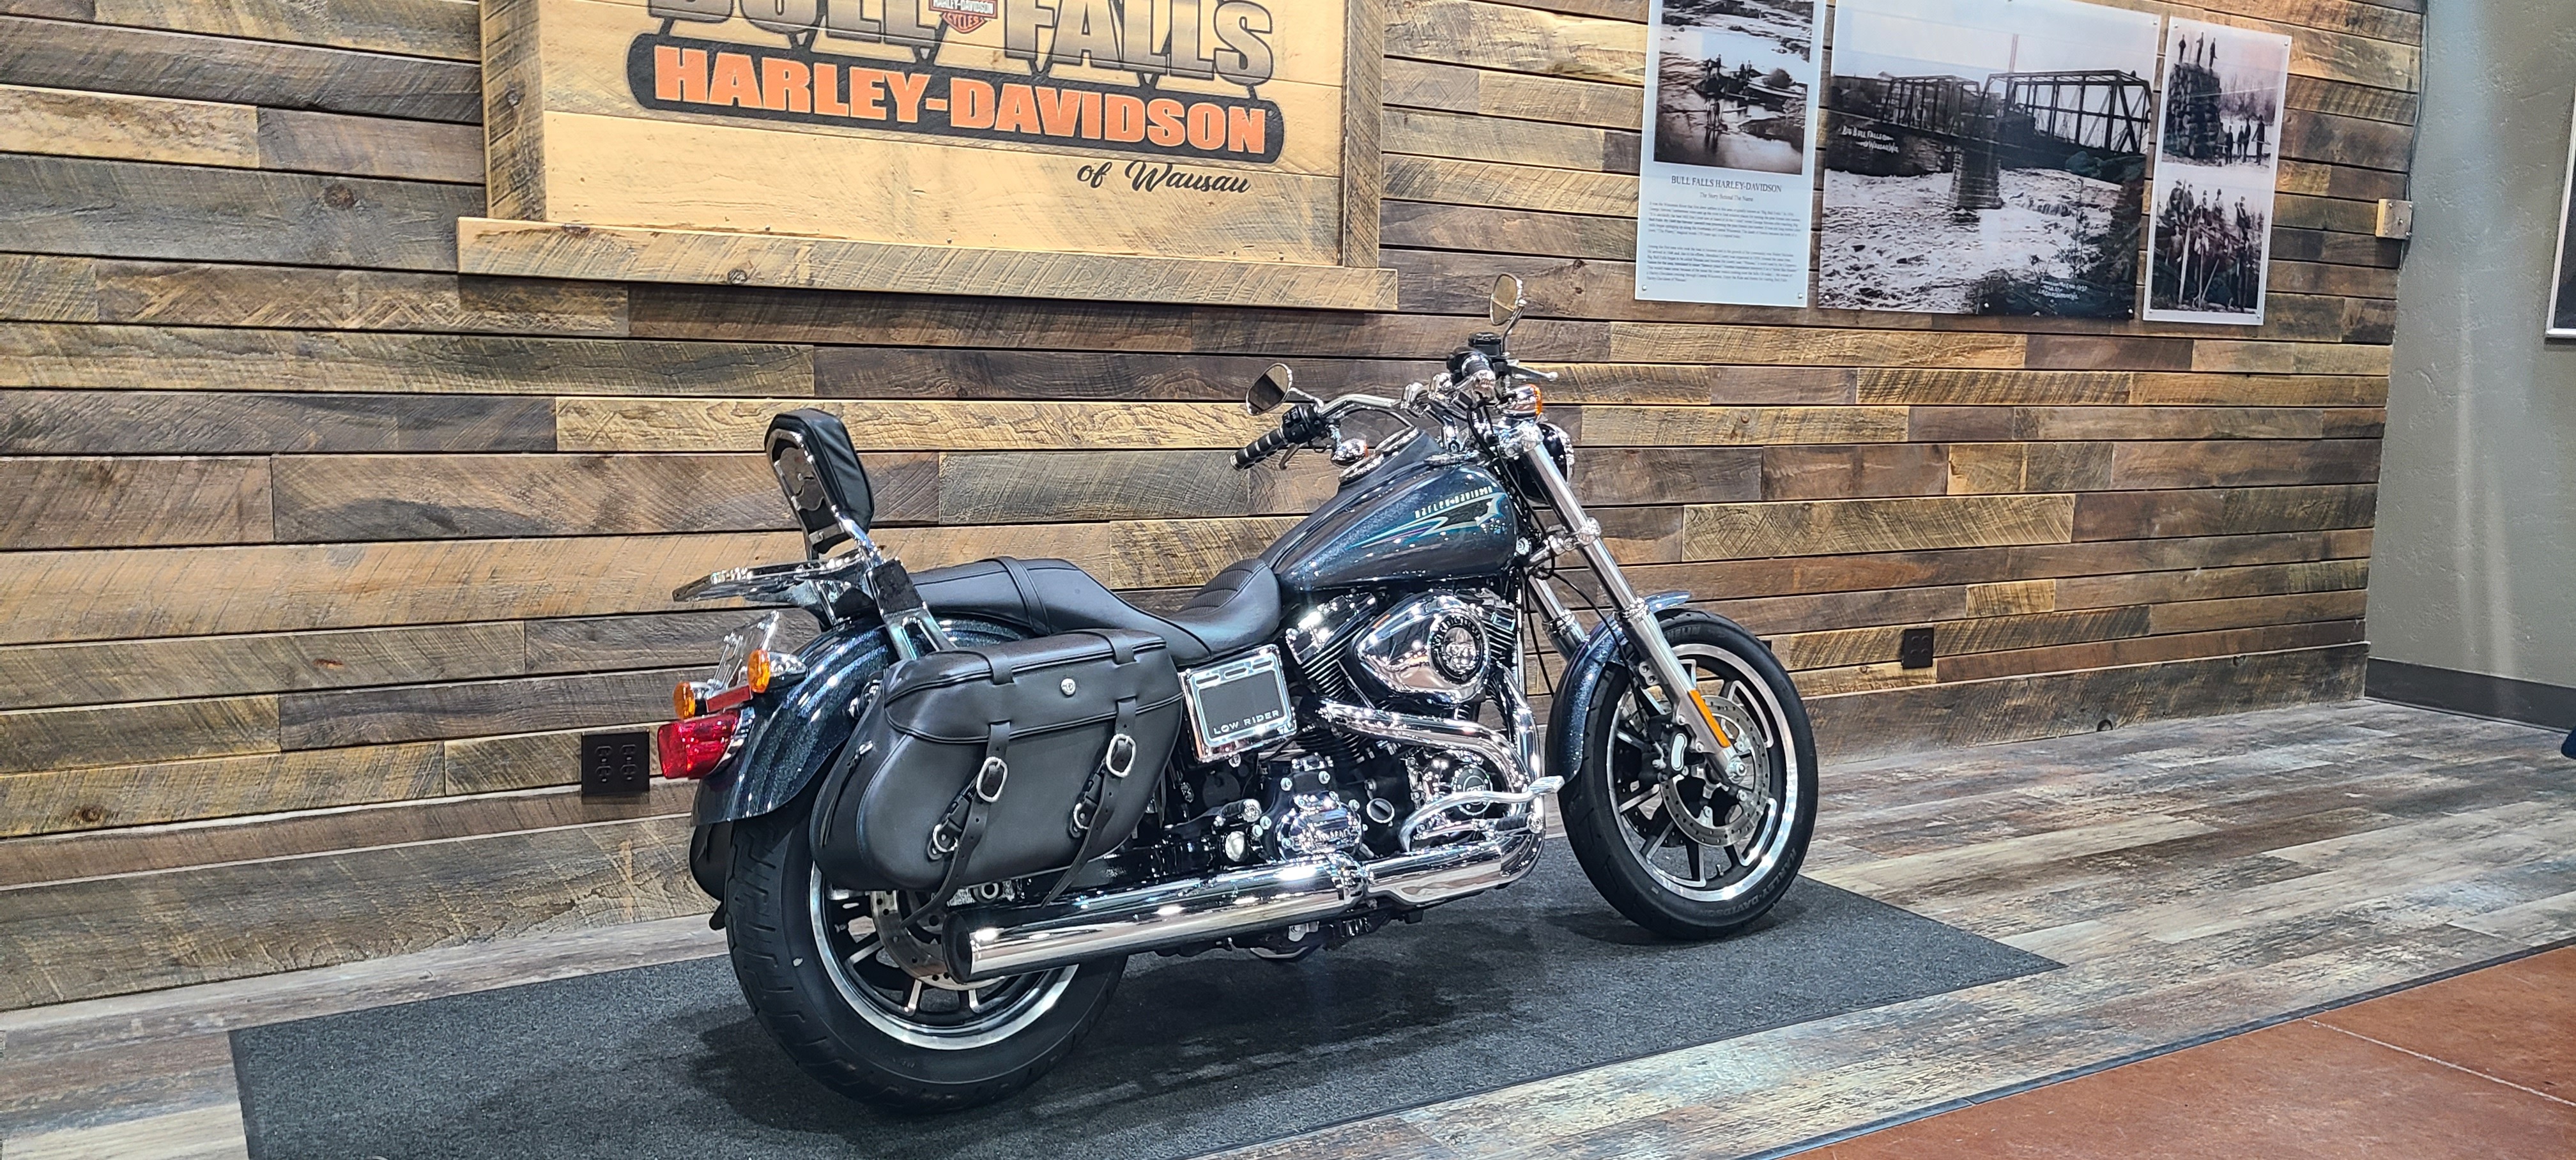 2015 Harley-Davidson Dyna Low Rider at Bull Falls Harley-Davidson